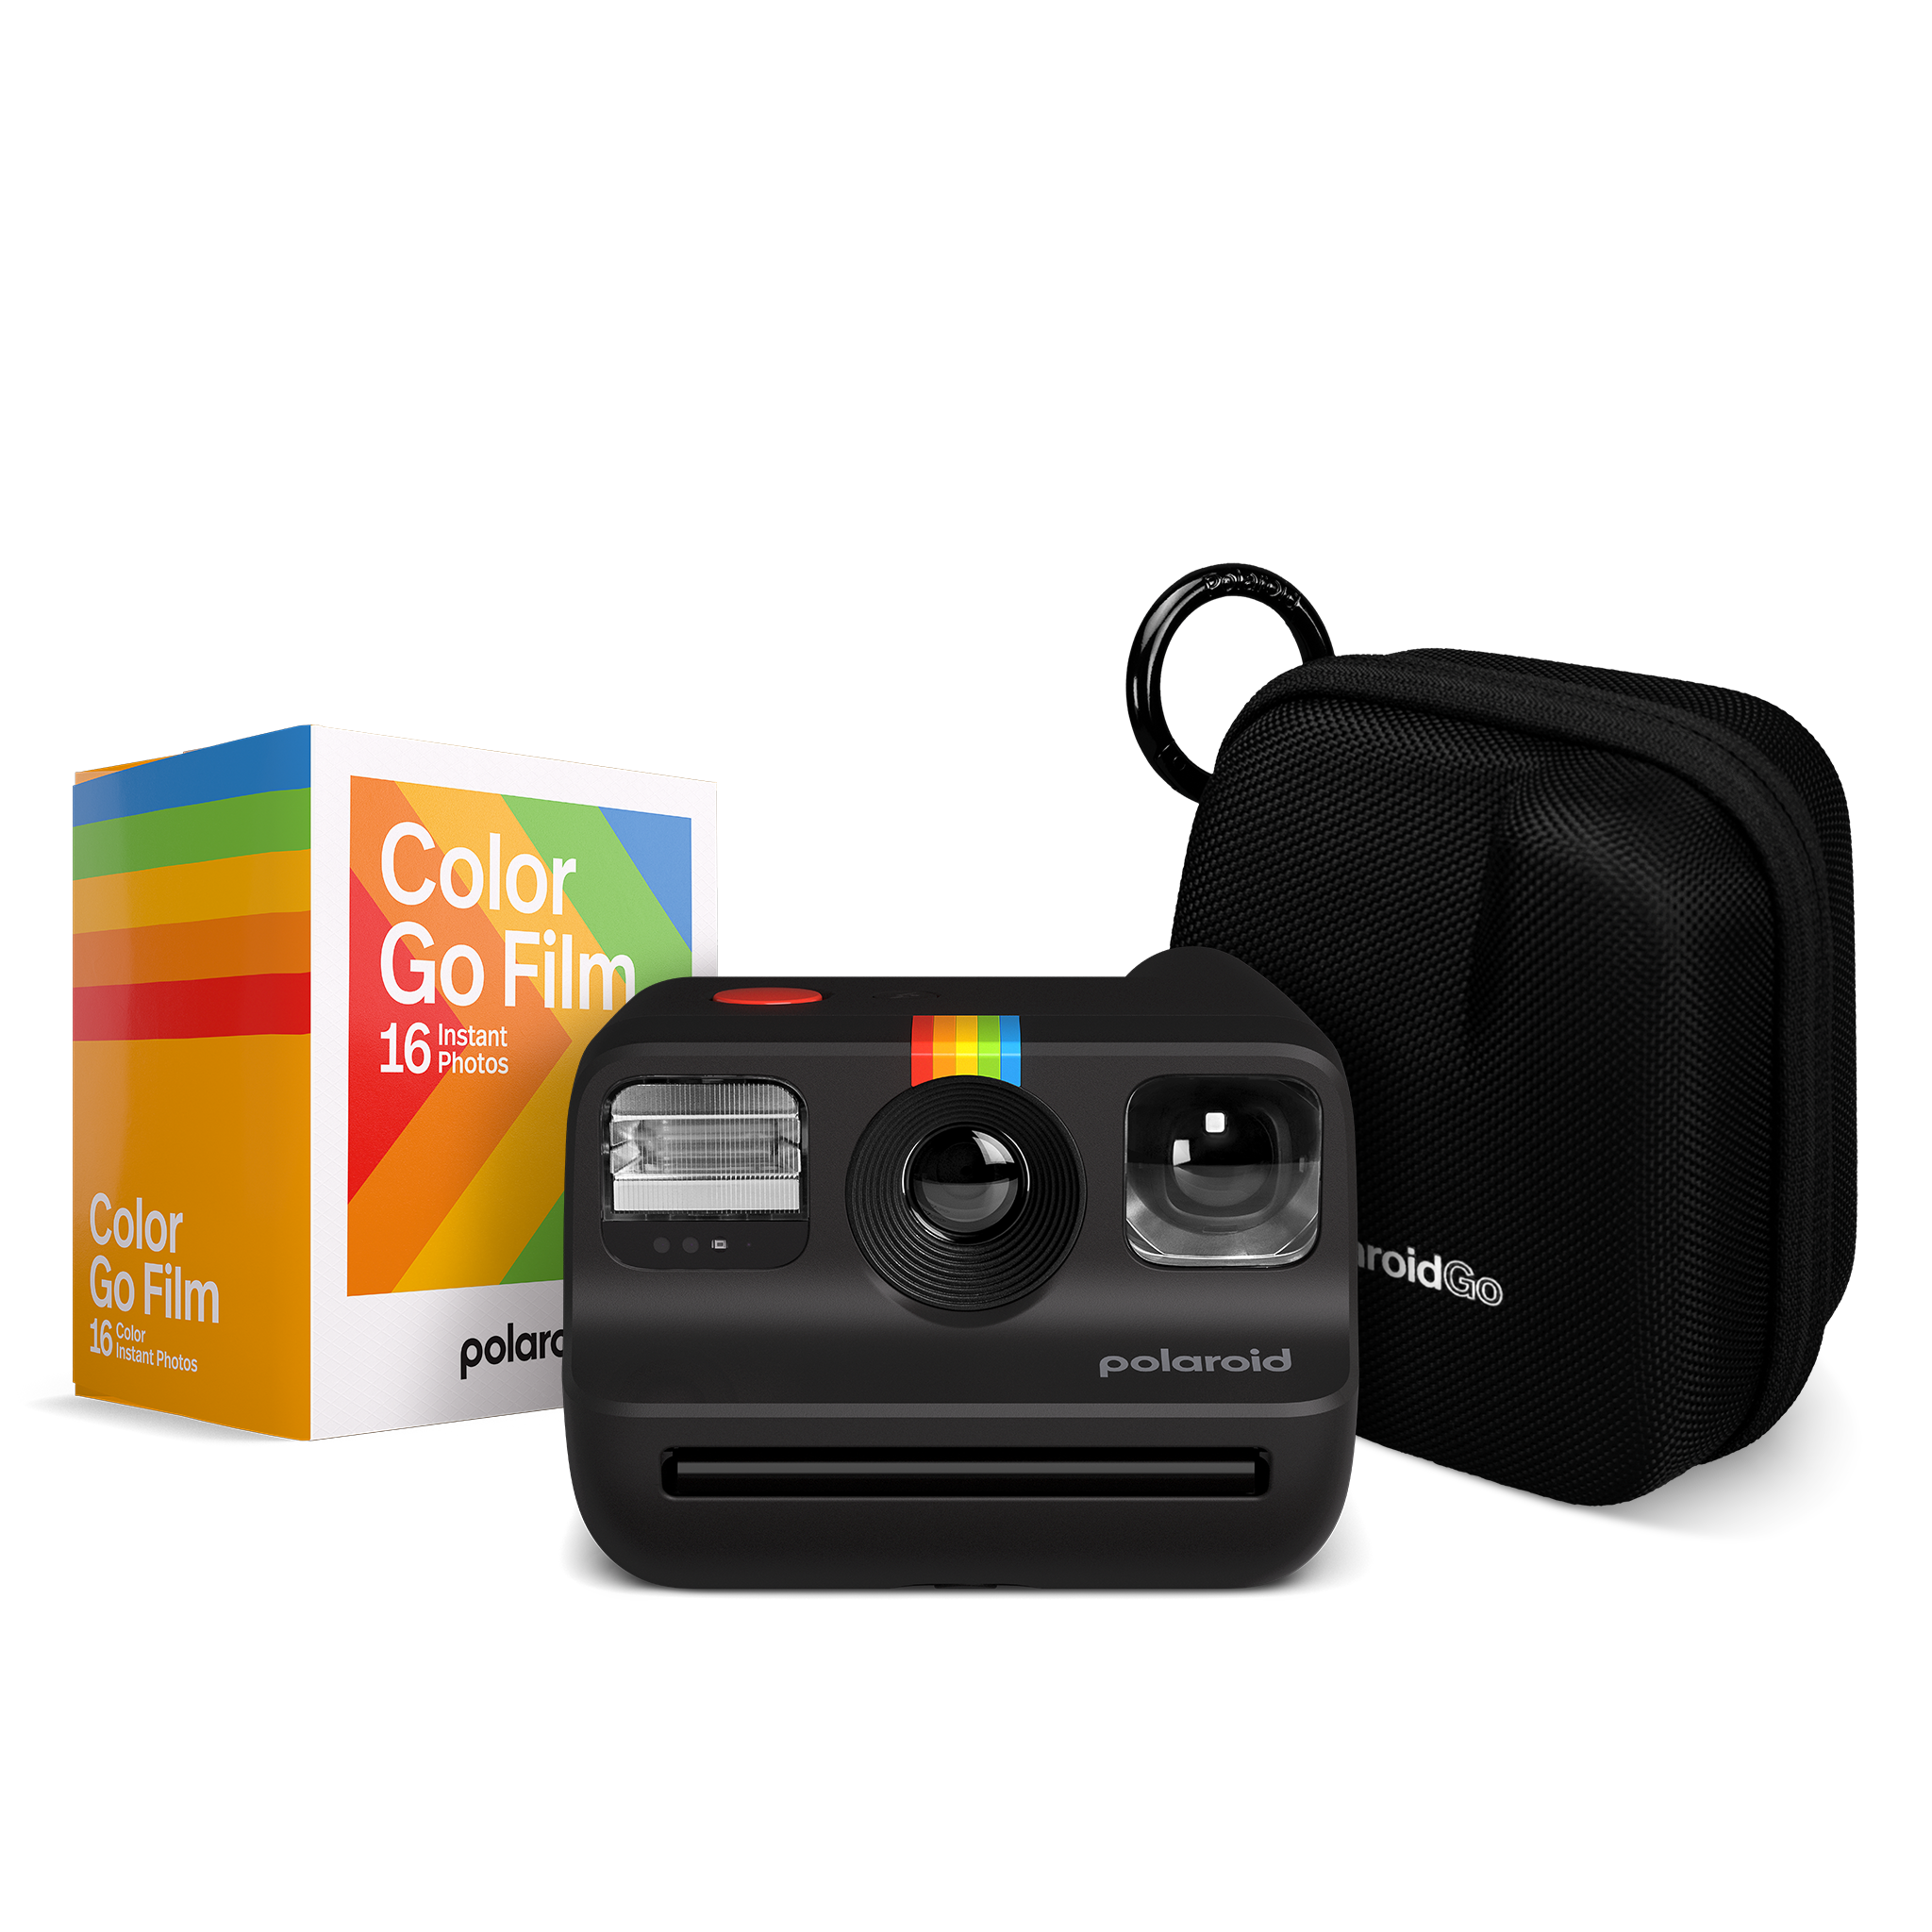 Fotocamera Polaroid Go - La Grua SRL